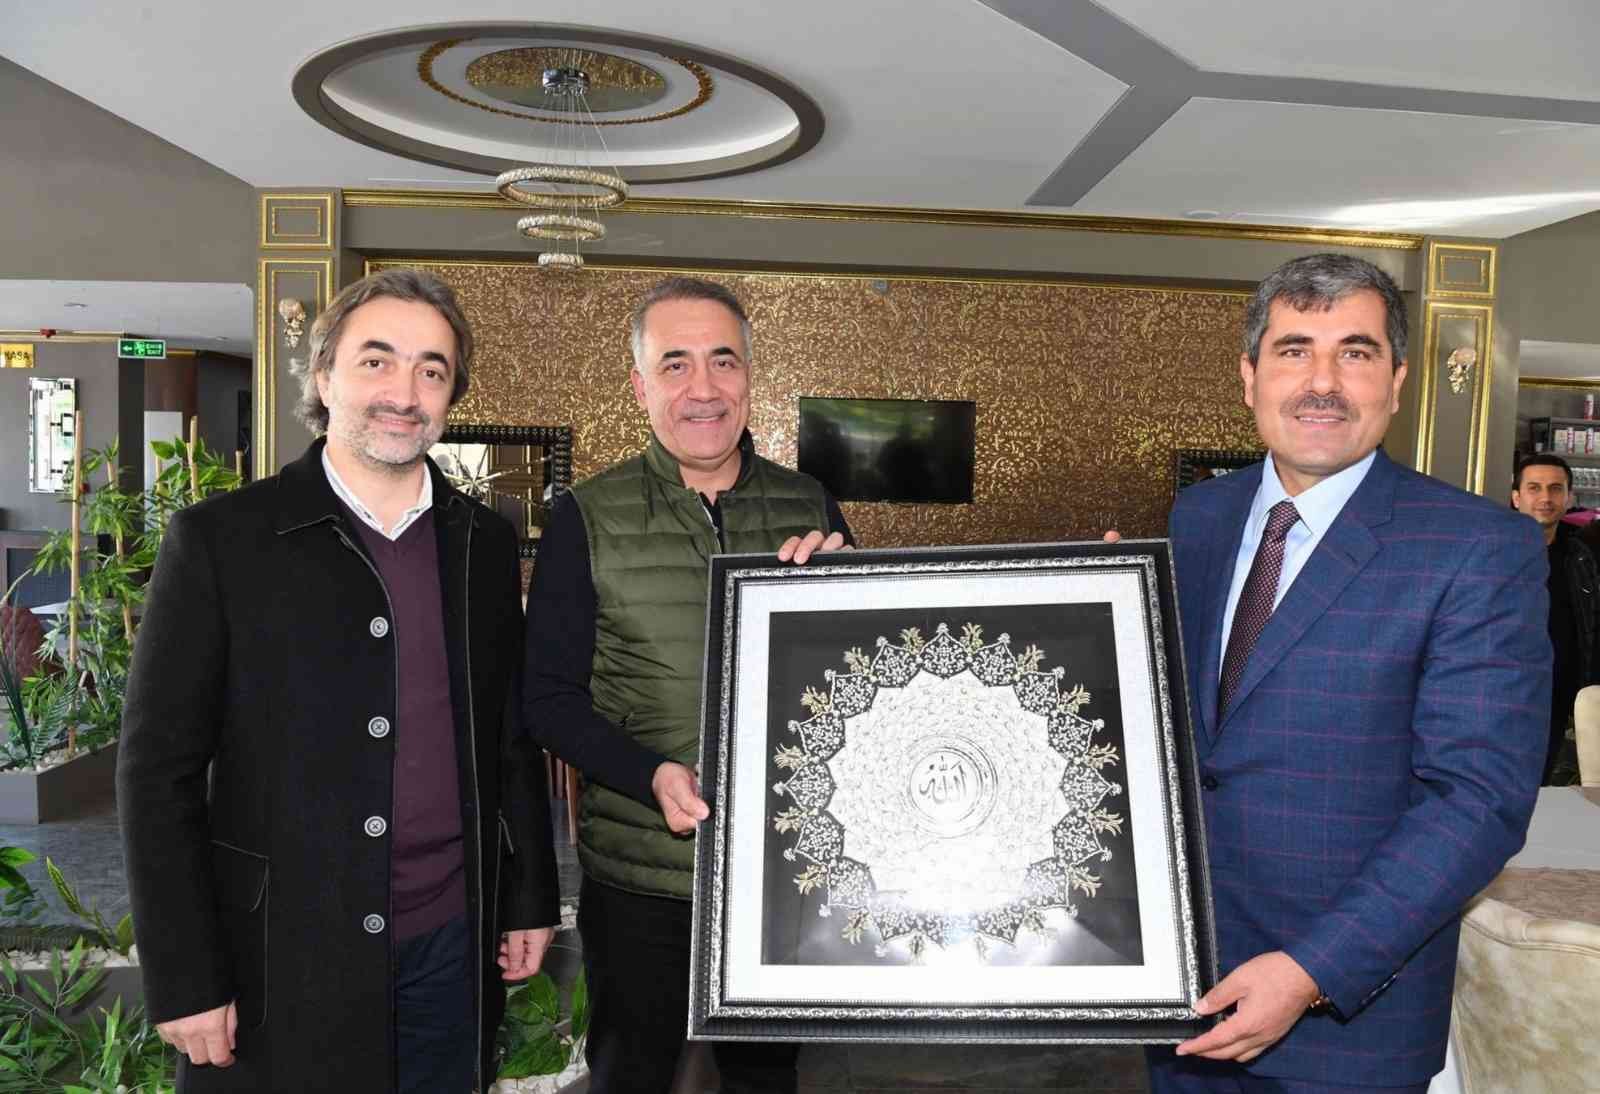 Sultangazi’den Muş ve Bitlis’e kardeşlik ziyareti #istanbul